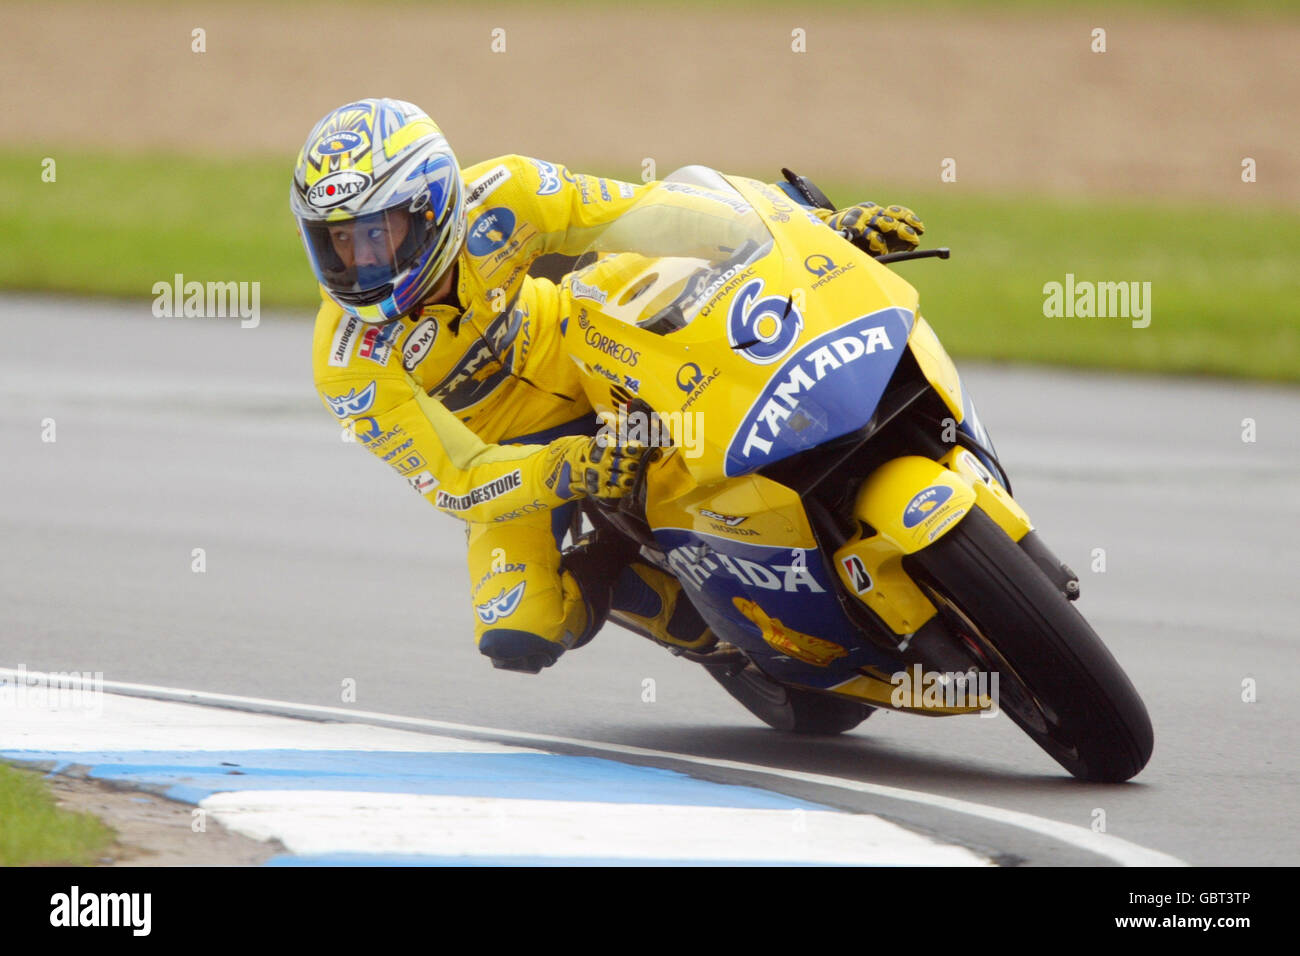 Motorradfahren - großer Preis von Großbritannien - Moto GP - Rennen. Makoto Tamada in Aktion Stockfoto